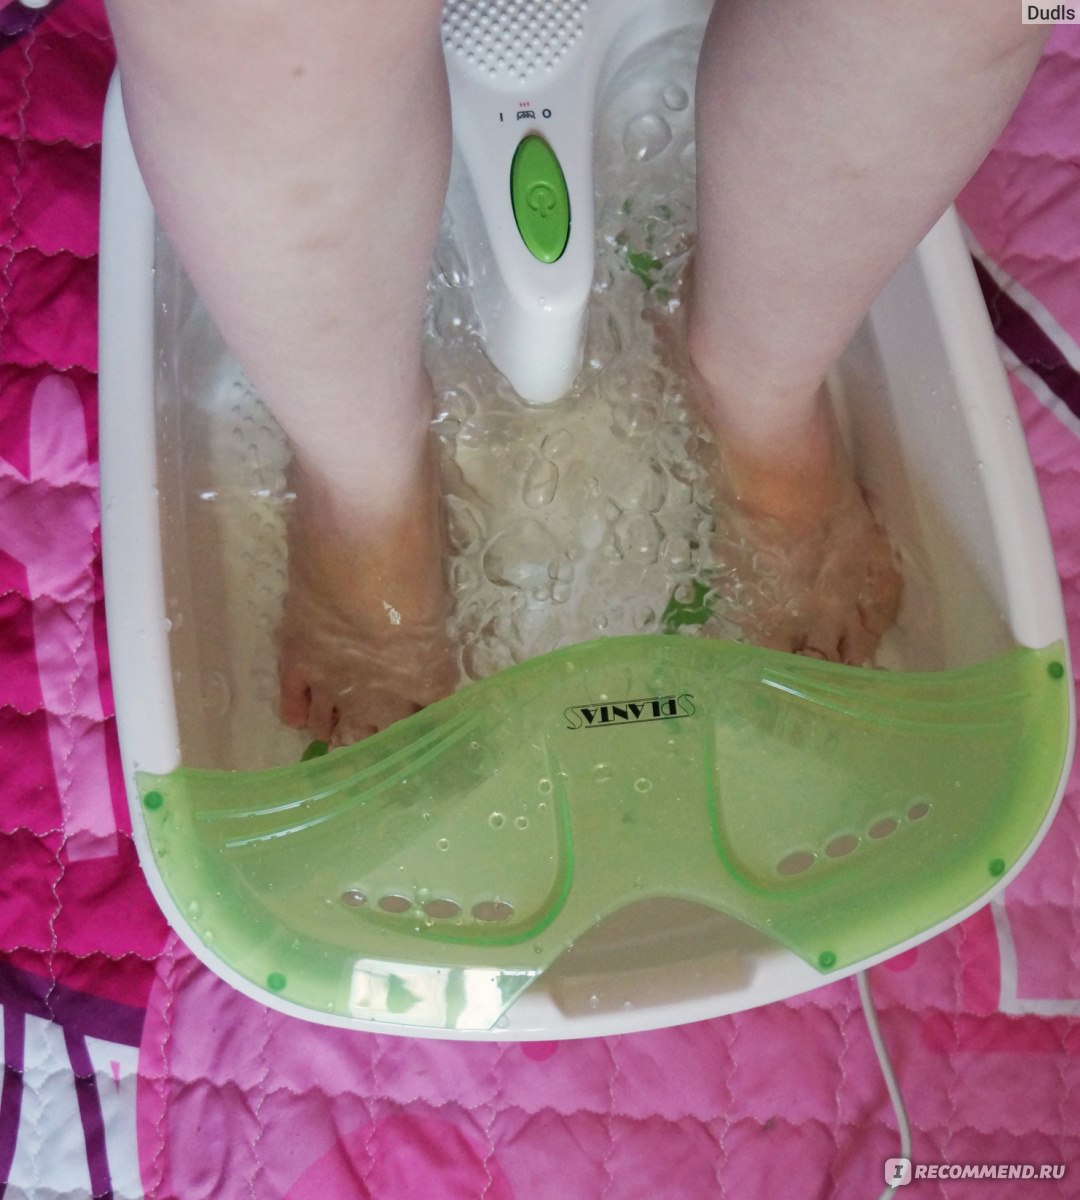 Ванночка для ног planta. Массажная ванночка planta MFS-200v Spa Salon. Планта ванночка для ног. Ванночка для ног с массажными шариками. Ванночка для массажа ног отзывы.